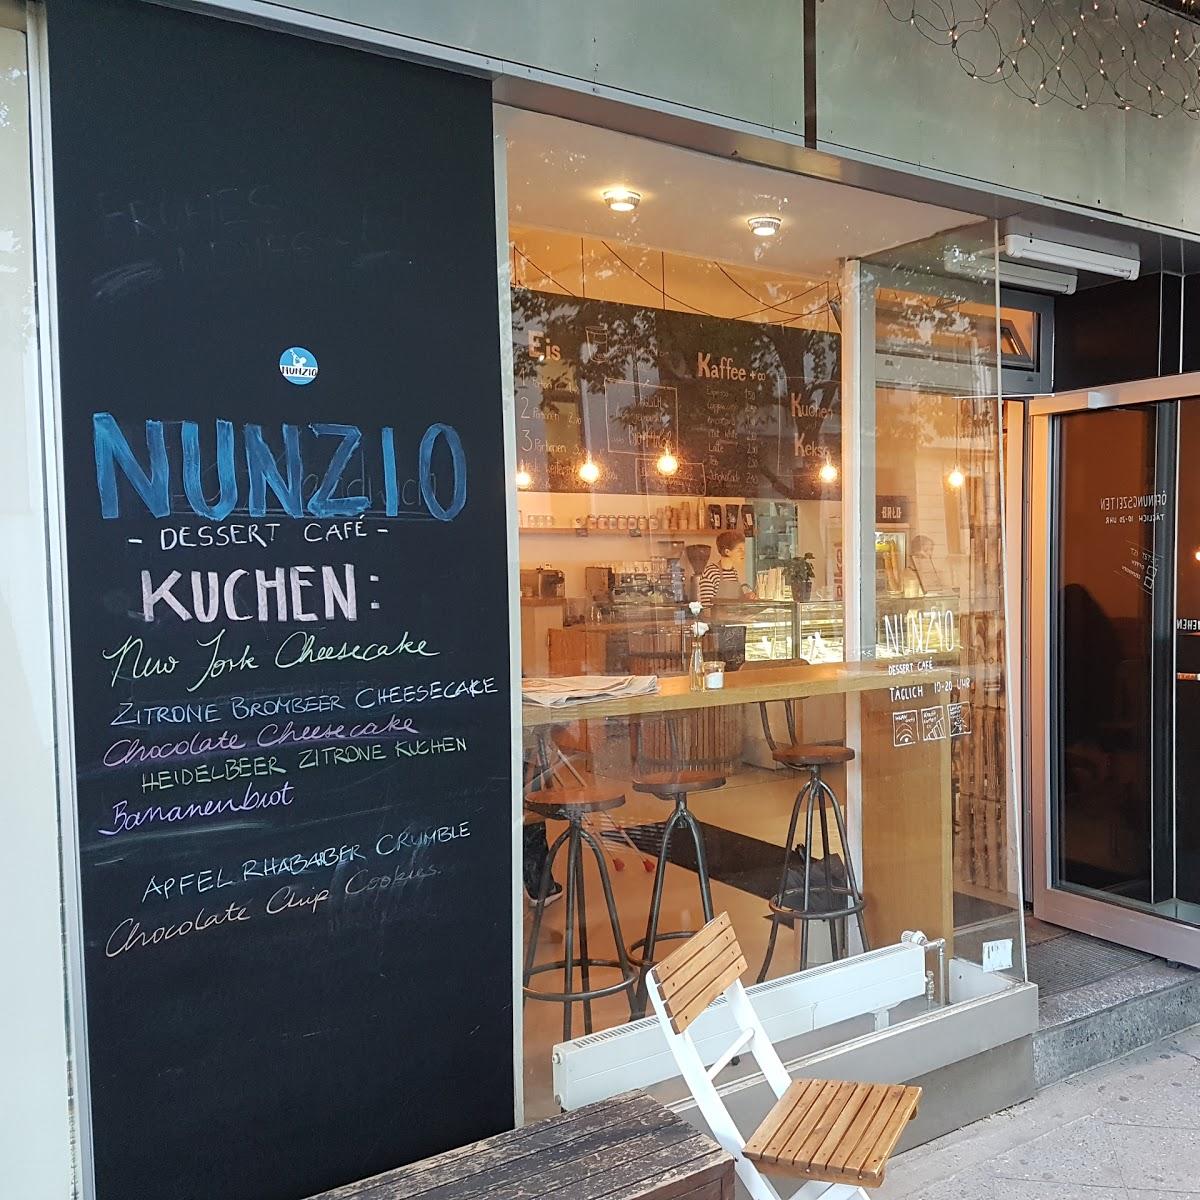 Restaurant "Nunzio" in Berlin